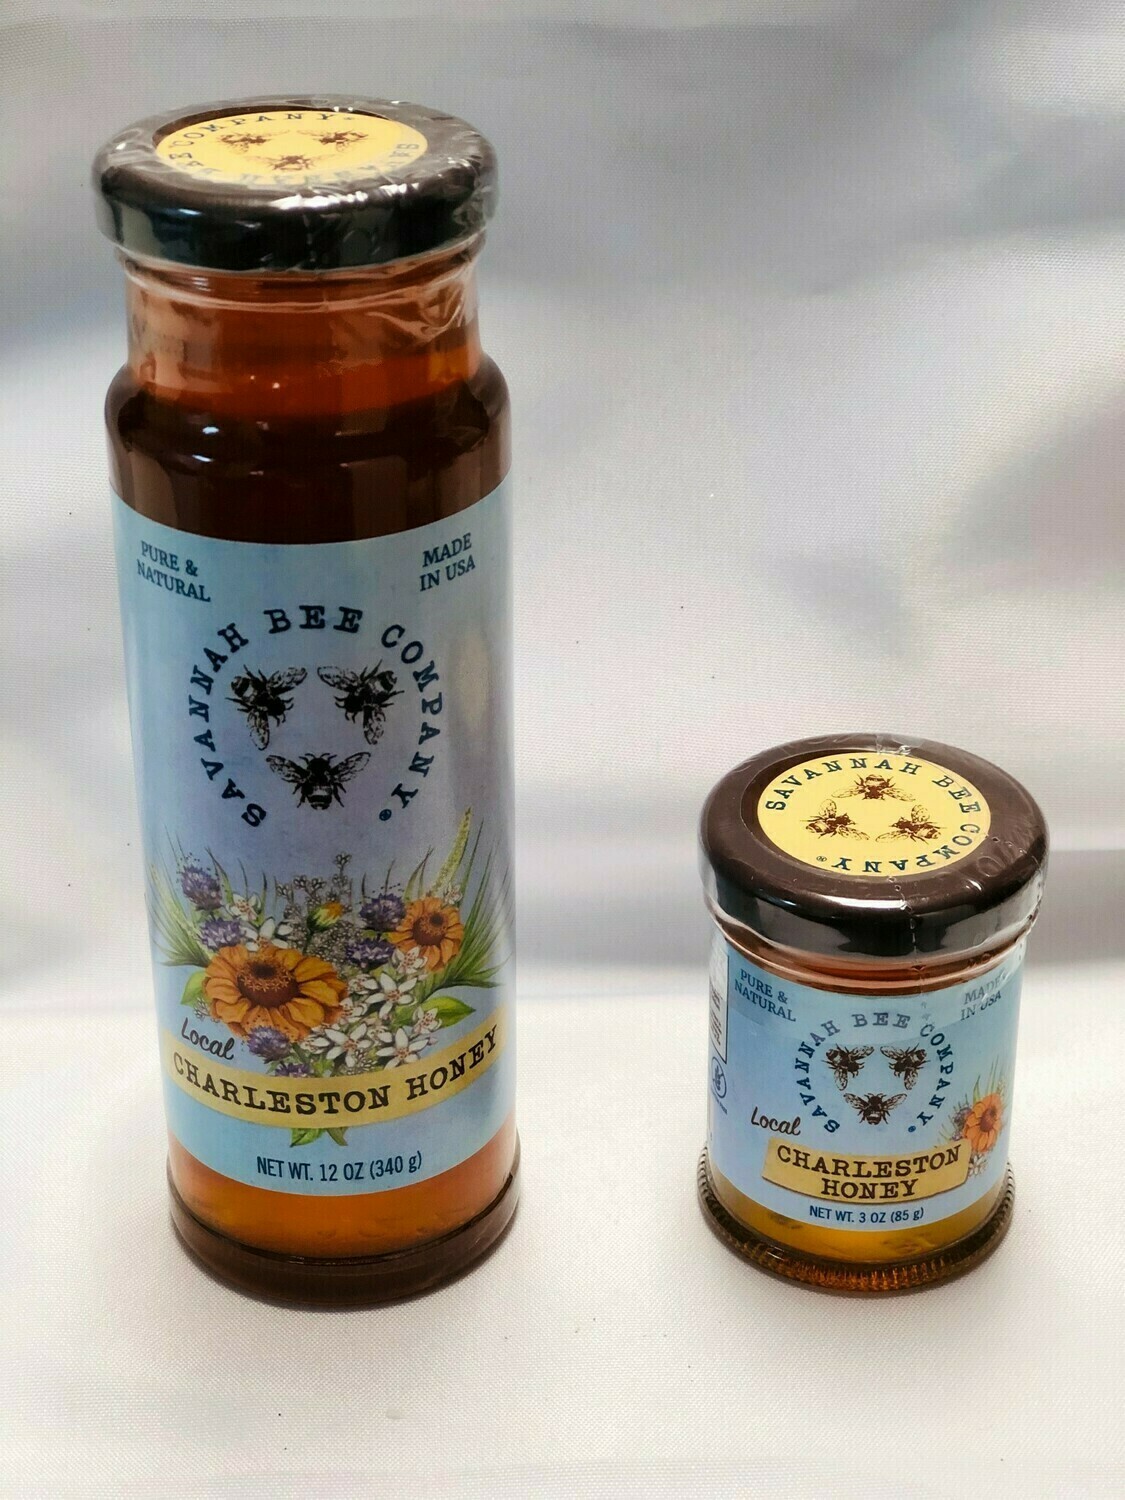 Charleston Honey Large Jar (12 oz)